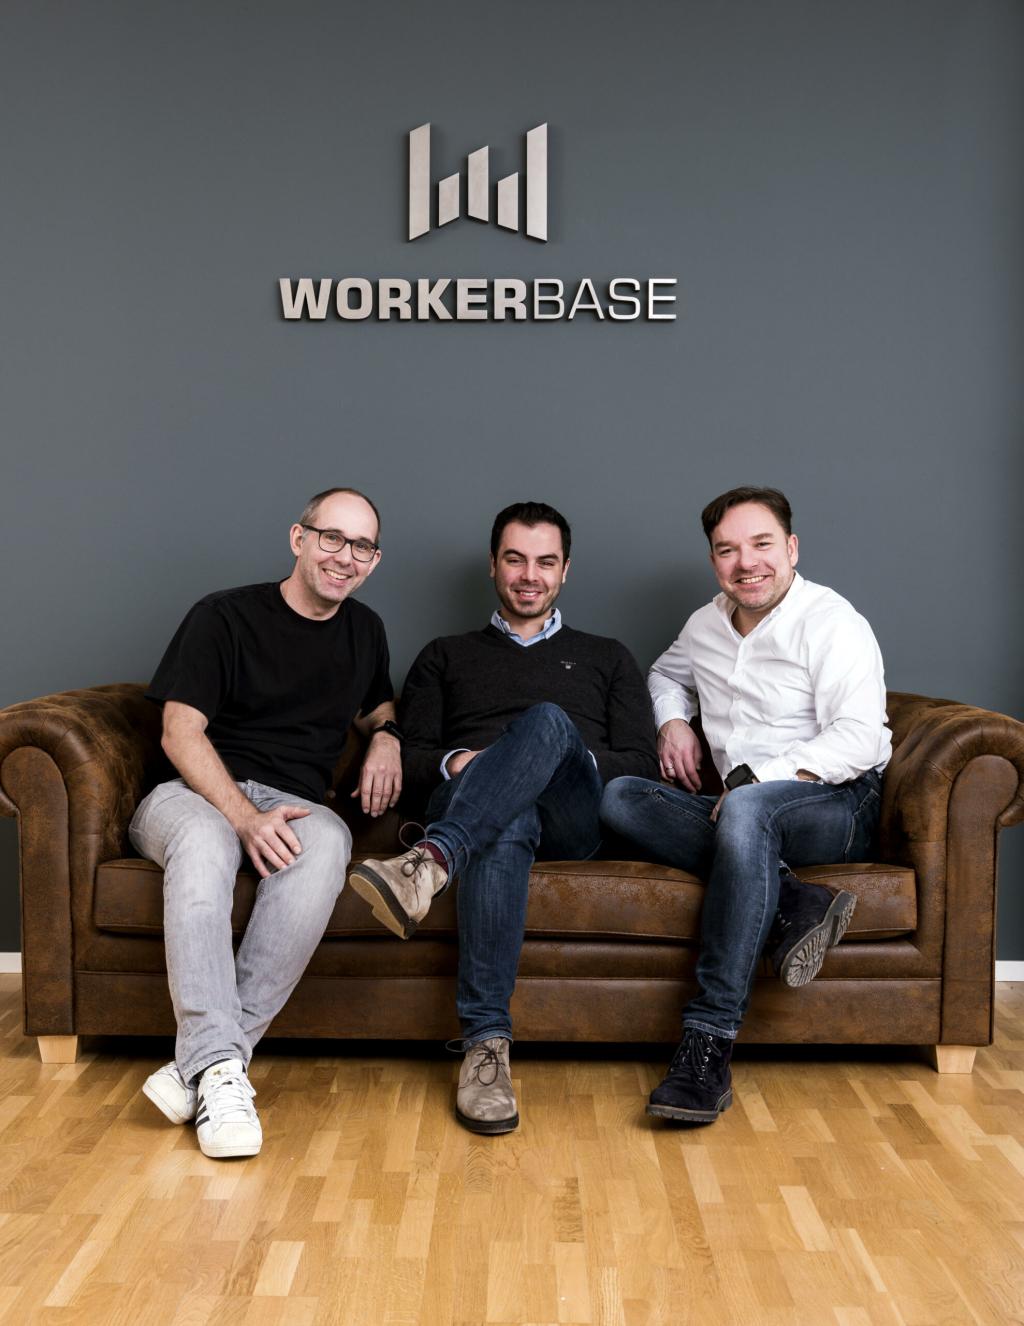 Workerbase receives ten million euros